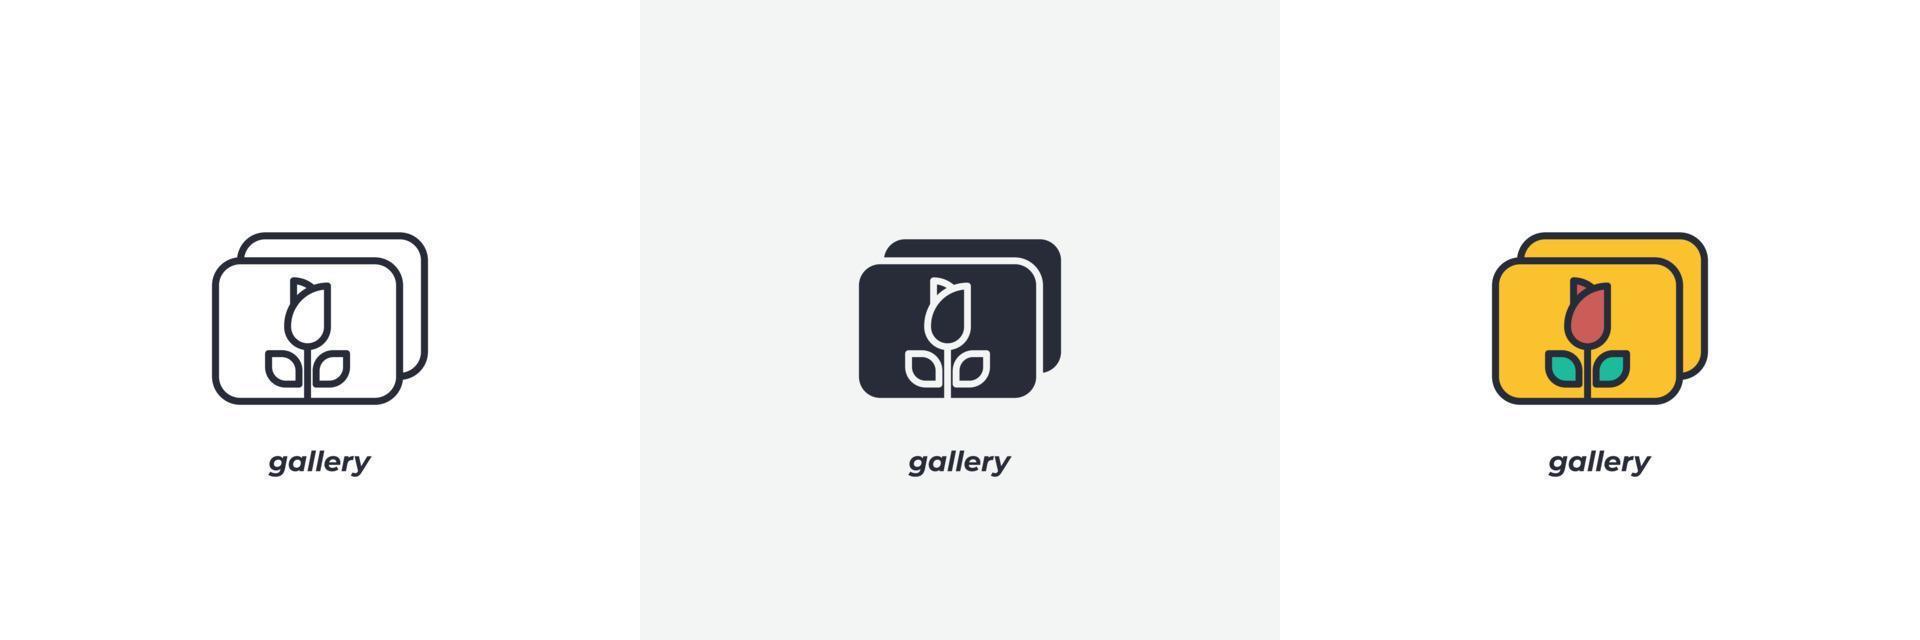 Galleri ikon. linje, fast och fylld översikt färgrik version, översikt och fylld vektor tecken. aning symbol, logotyp illustration. vektor grafik